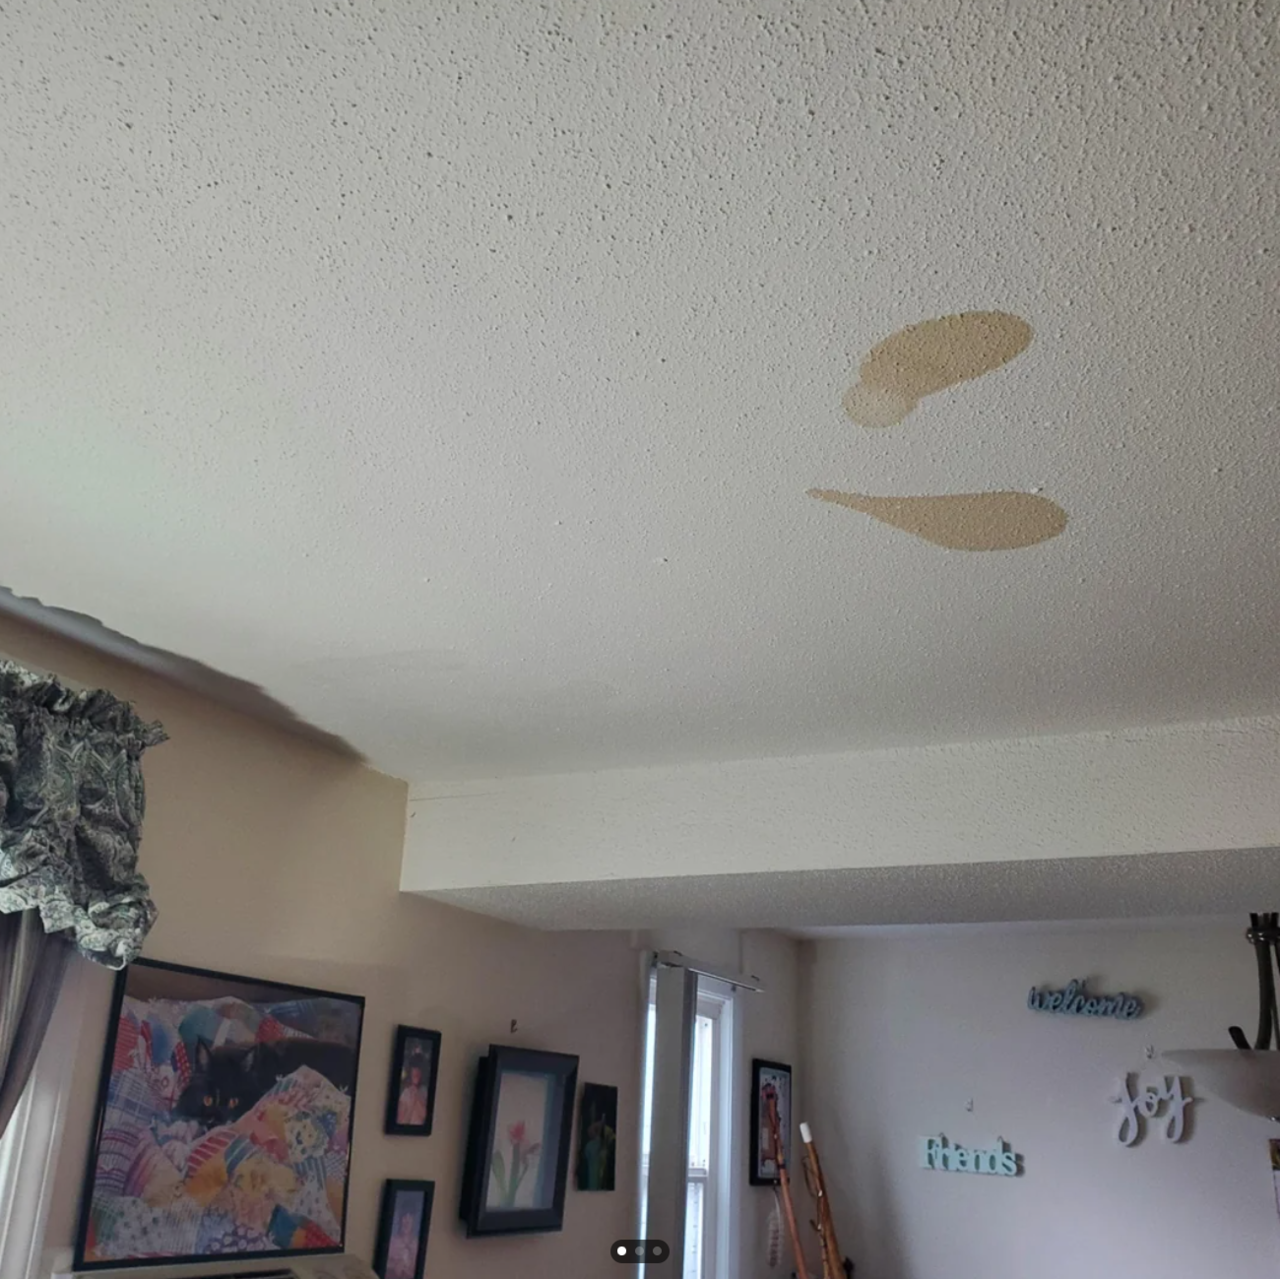 一名网友指出租屋处天花板上出现两片大小差不多的淡咖啡污渍，尽管已请人重新上漆，但过几天后又再出现，还会移动到不同位置。图撷自Reddit